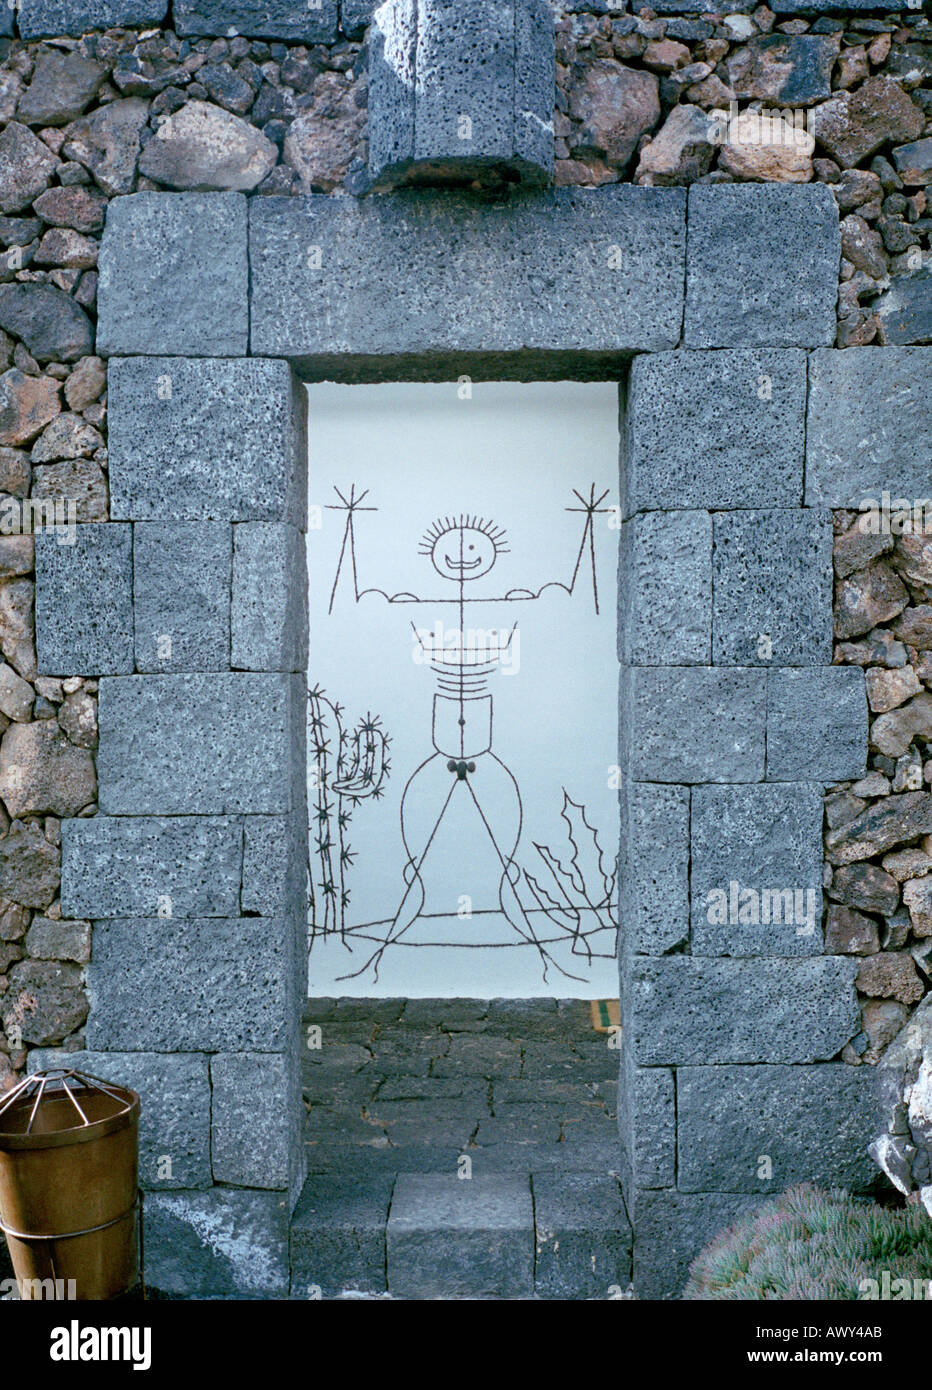 L'homme dessin animé par César Manrique au jardin de cactus de Lanzarote island pour indiquer les toilettes publiques Banque D'Images